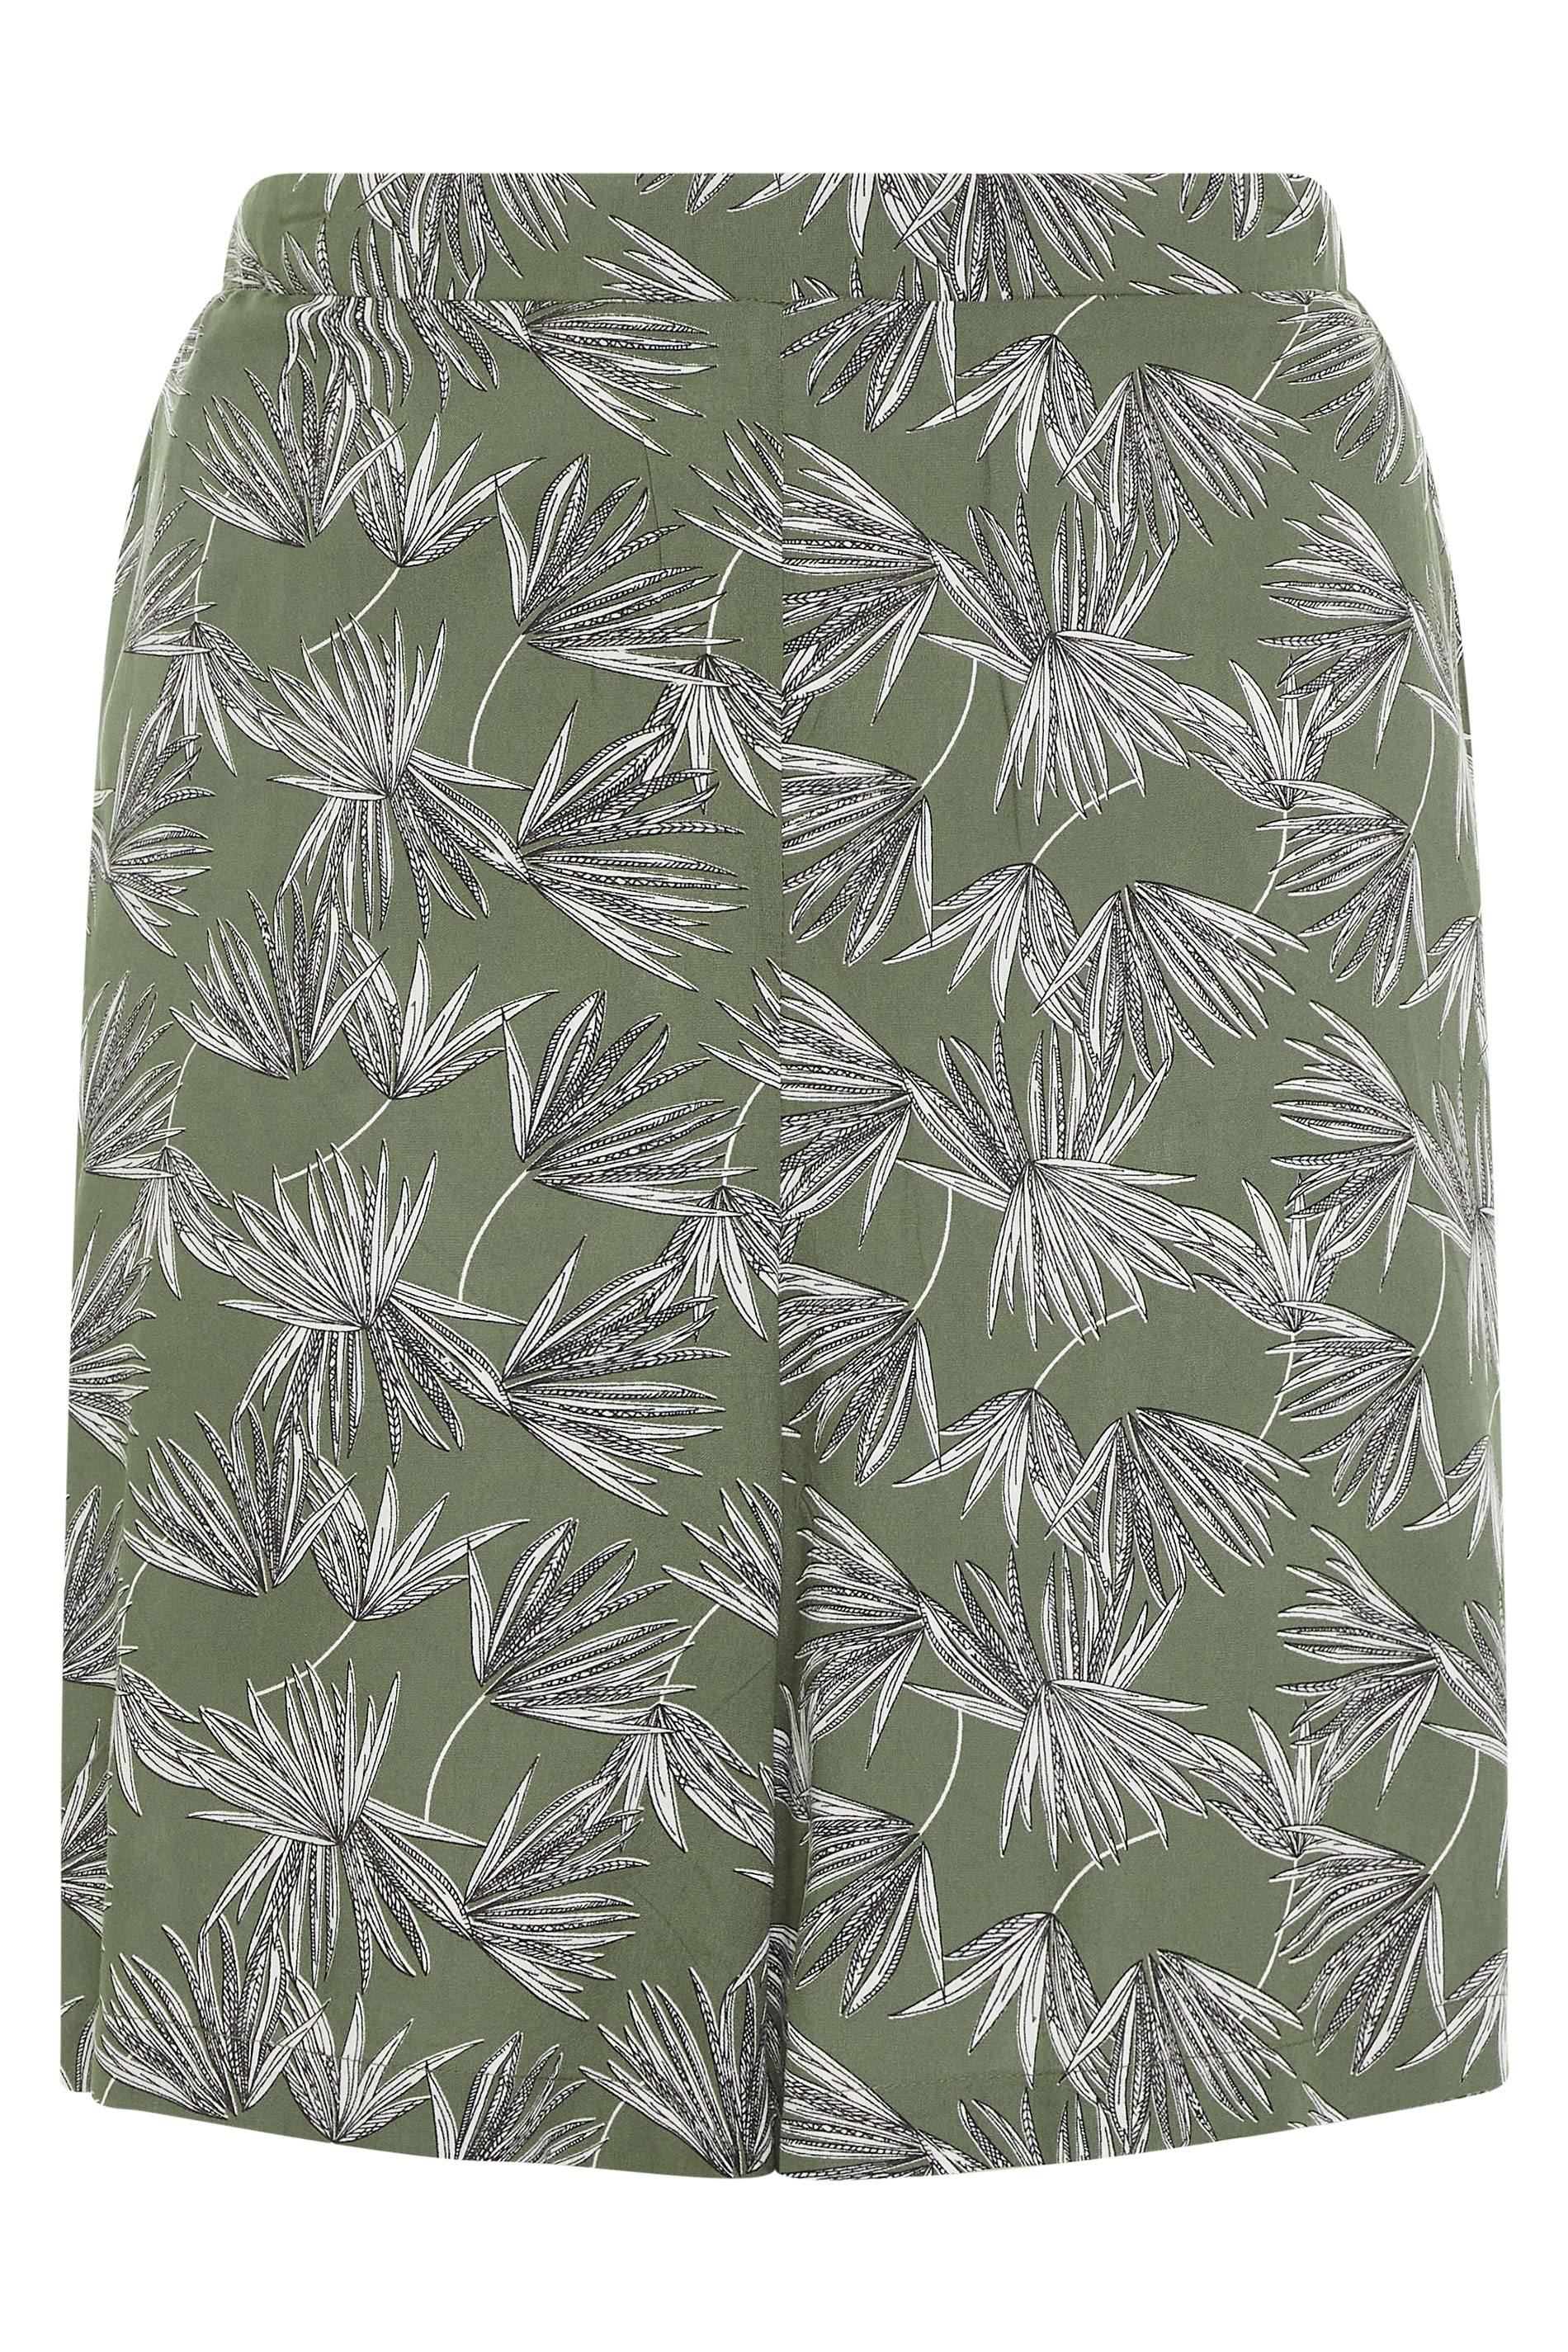 Khaki Palm Print Crinkle Shorts | Yours Clothing